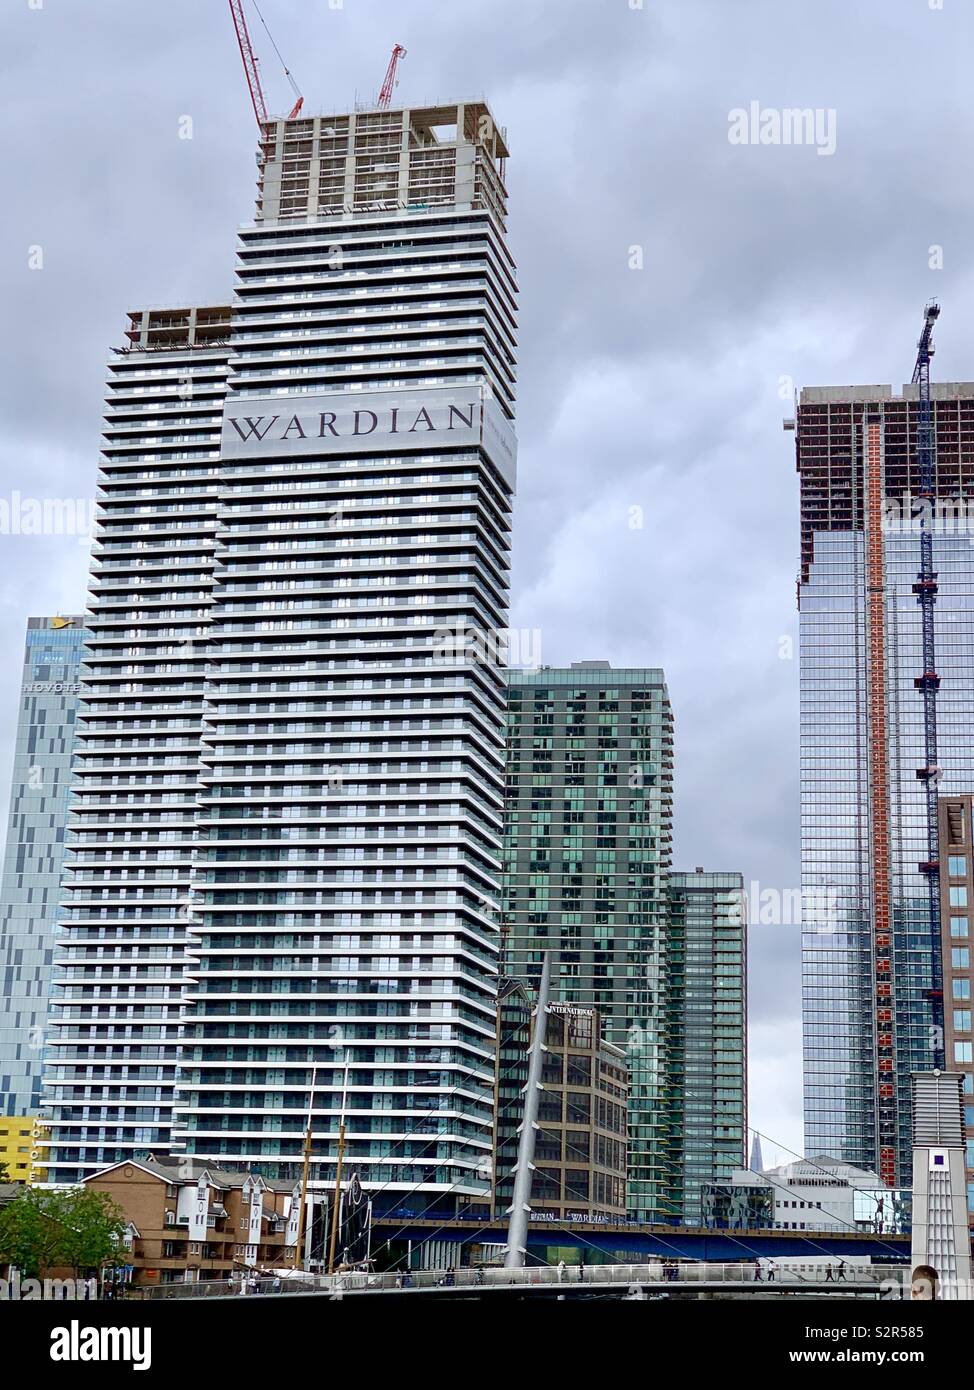 Londres, Royaume-Uni - 15 juin 2019 : Wardian gratte-ciel résidentiel en construction à Canary Wharf. Banque D'Images